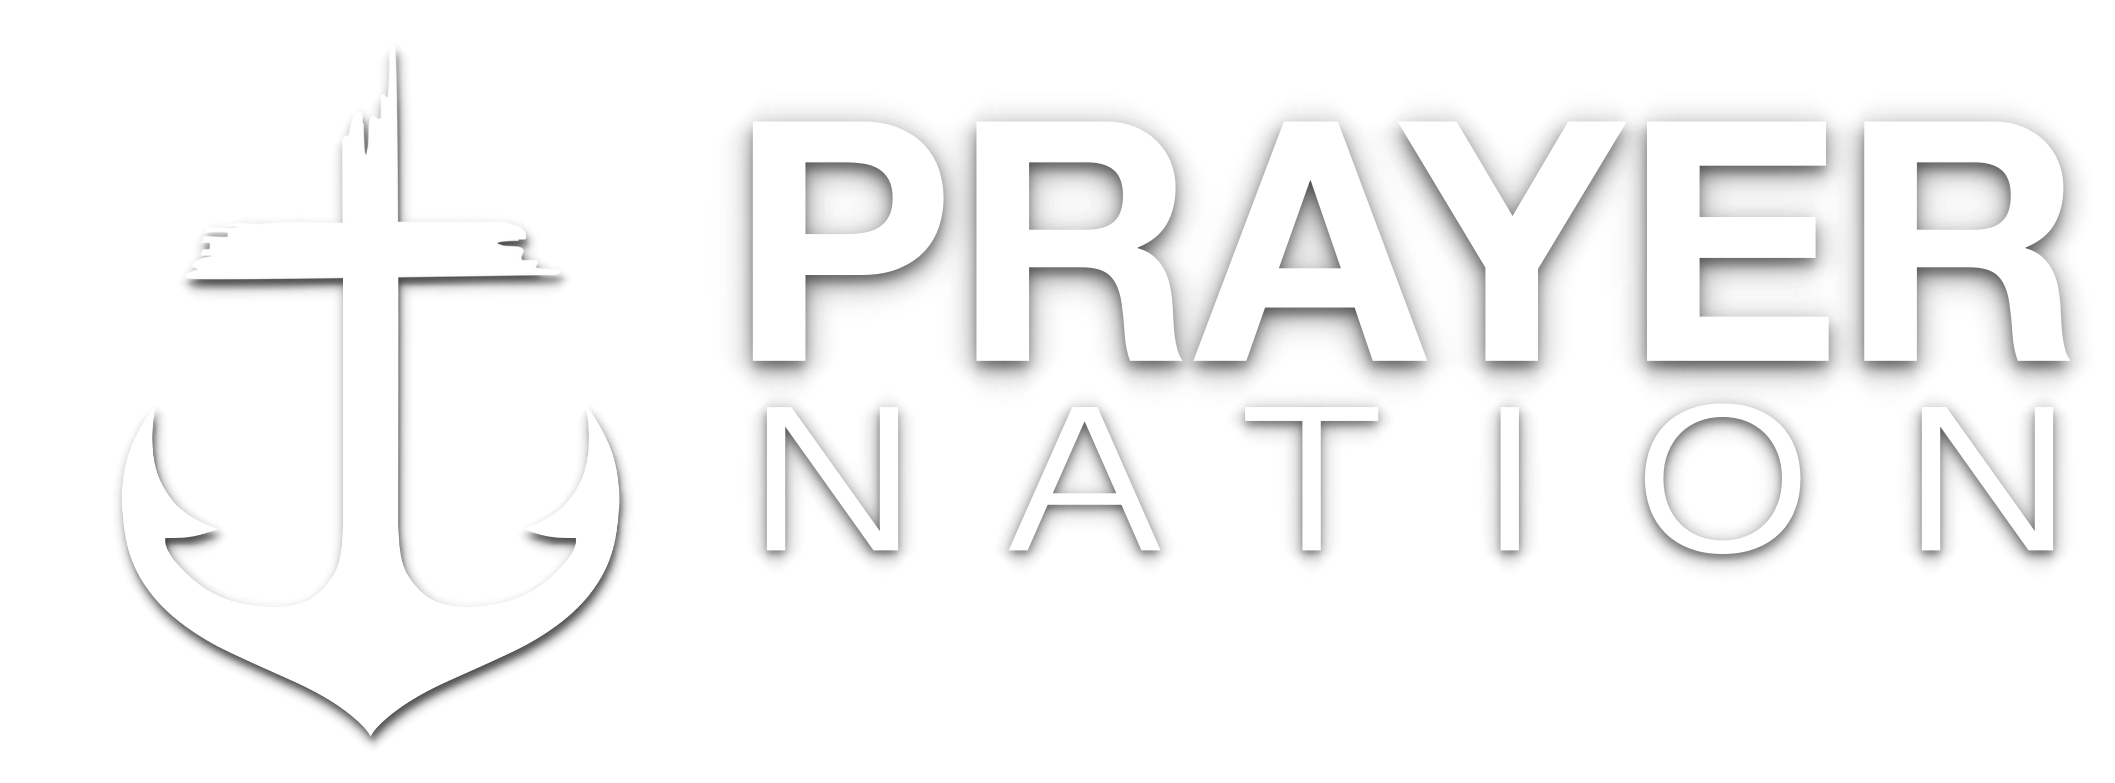 PRAYER NATION Logo